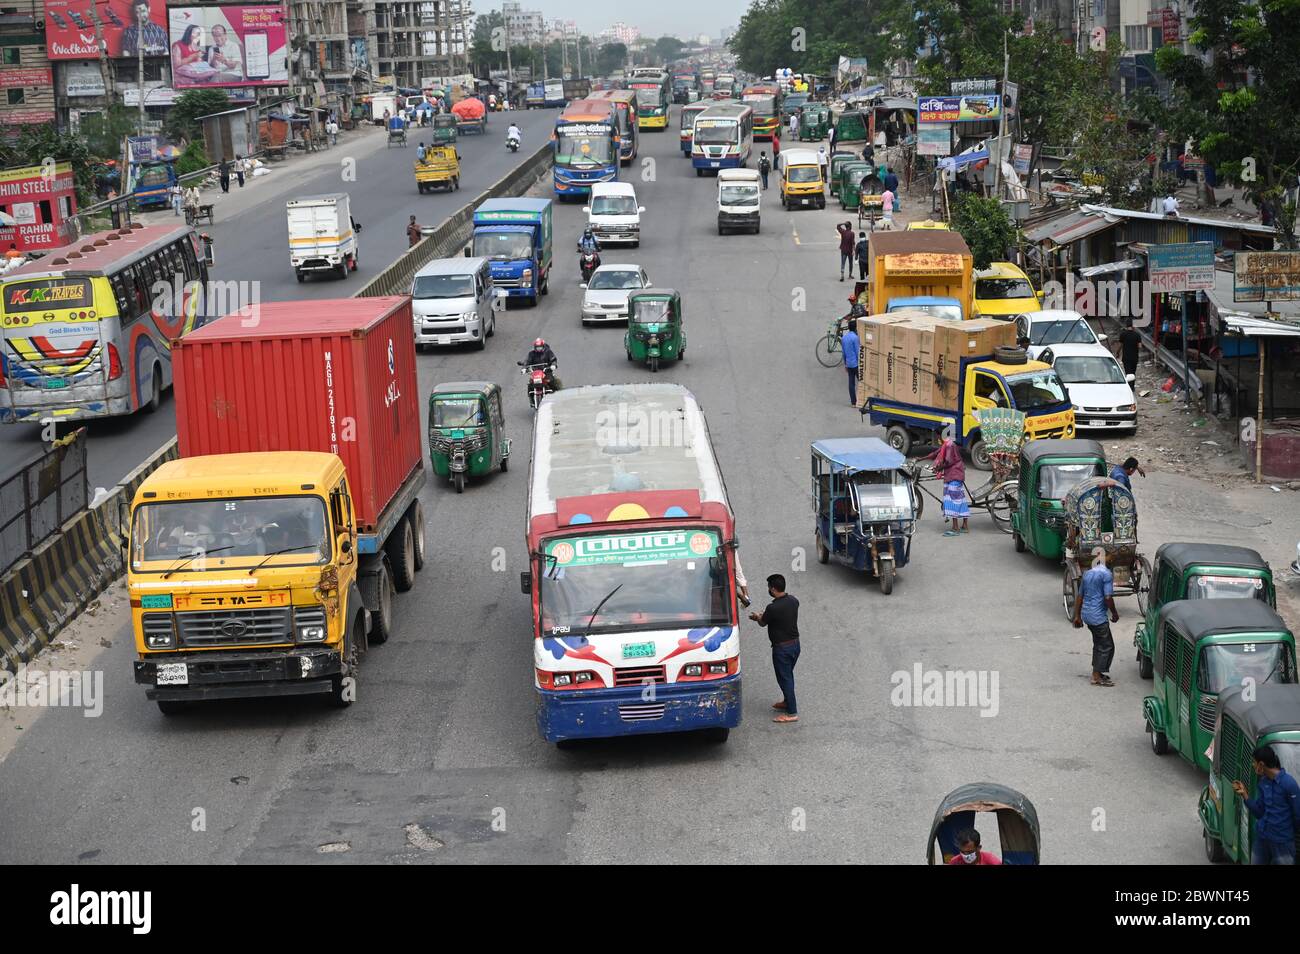 Transports publics vus le long d'une rue après la fin d'un confinement à la suite de l'épidémie de coronavirus COVID-19 à Dhaka, au Bangladesh, le 1er juin 2020. Banque D'Images